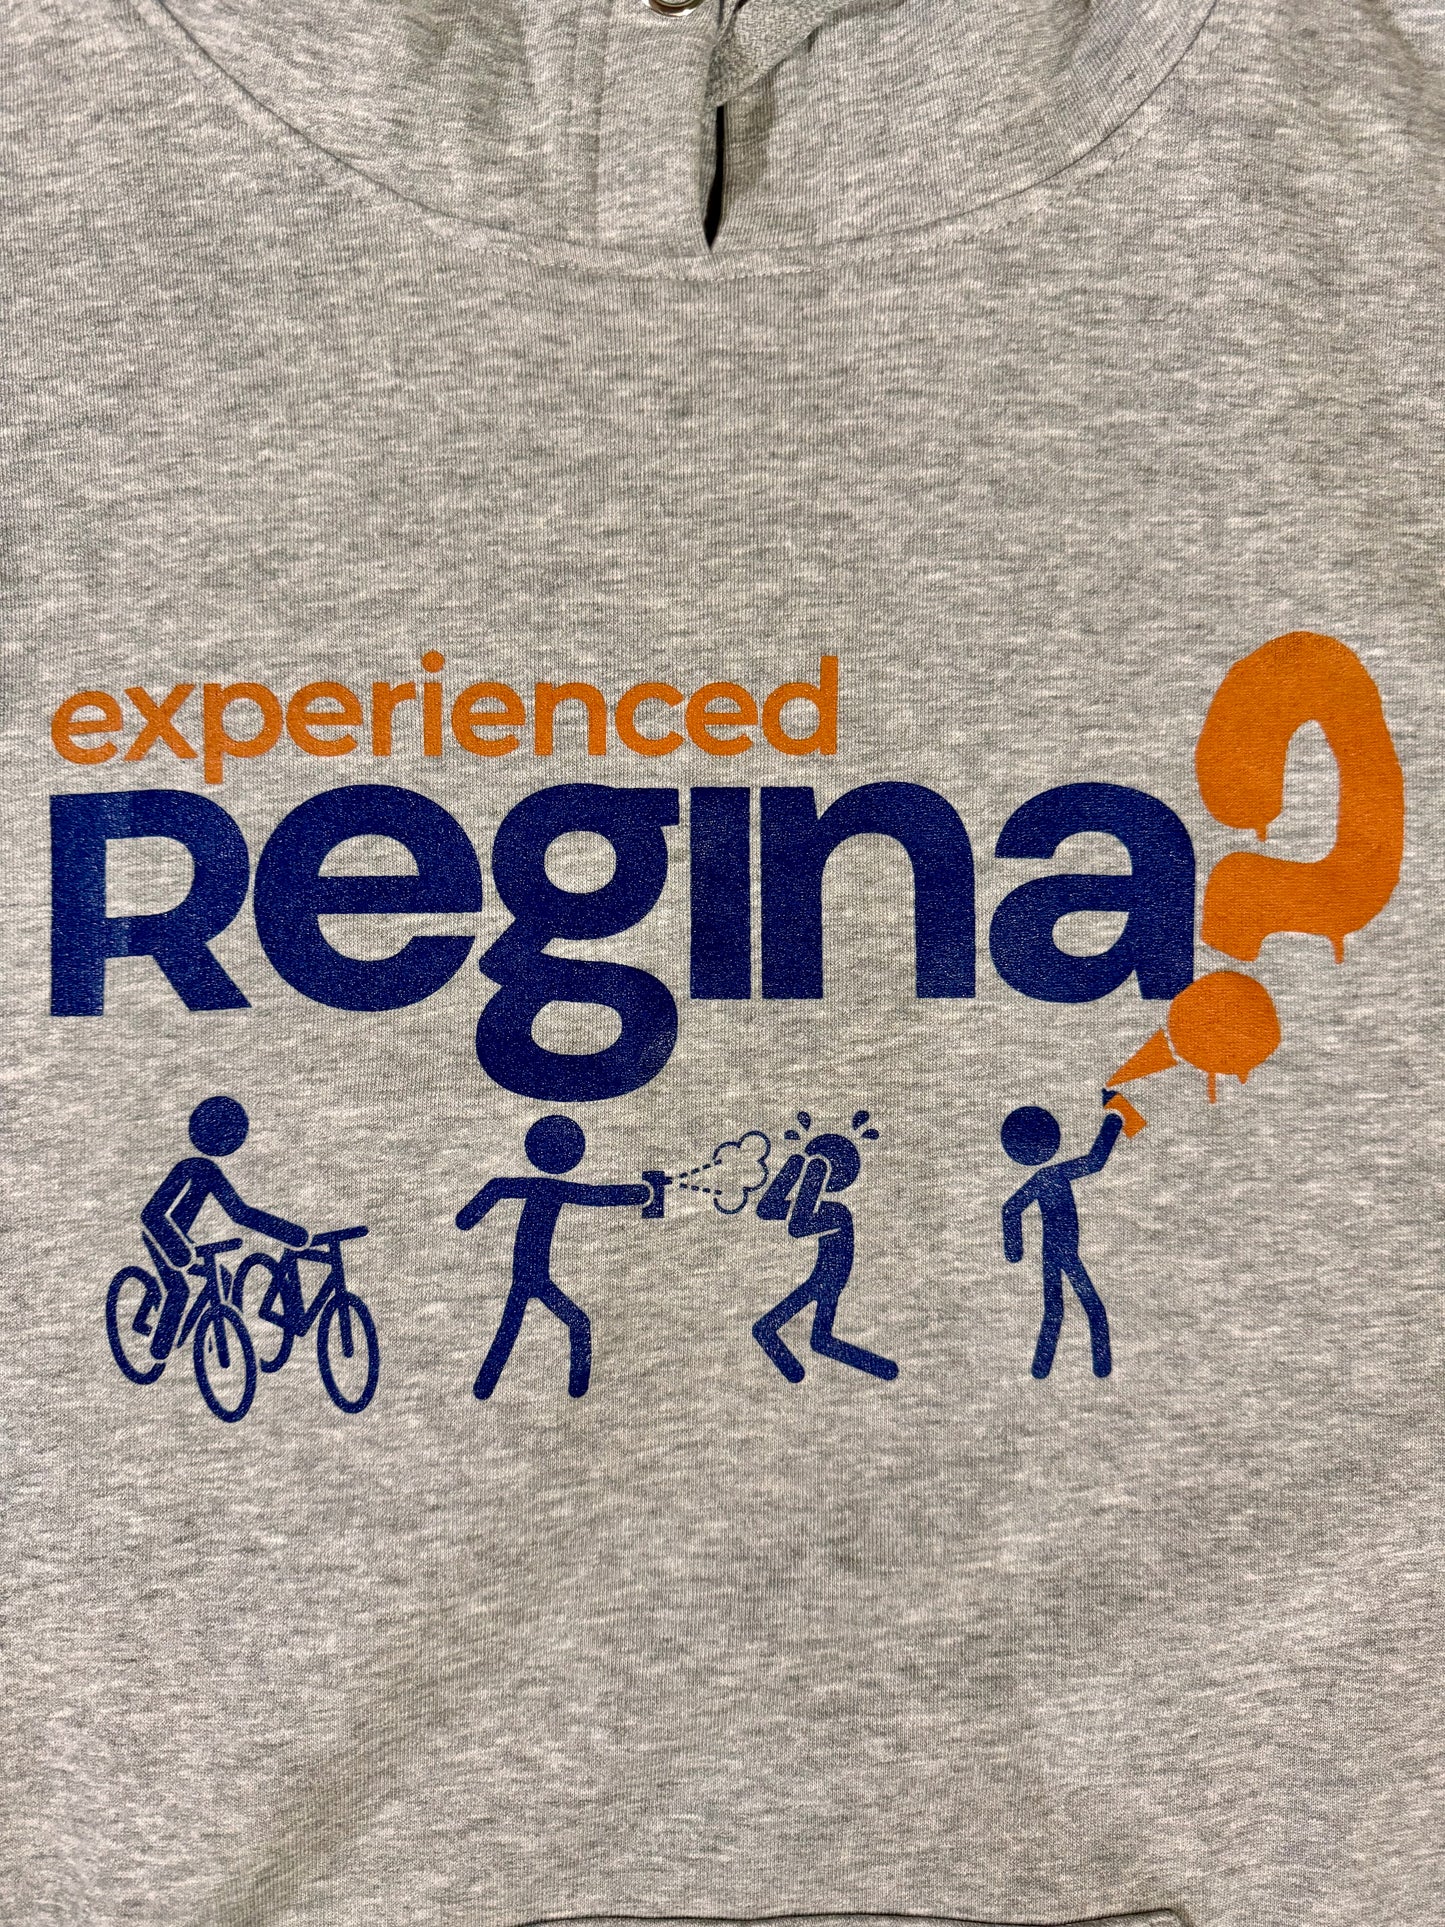 Experienced Regina?